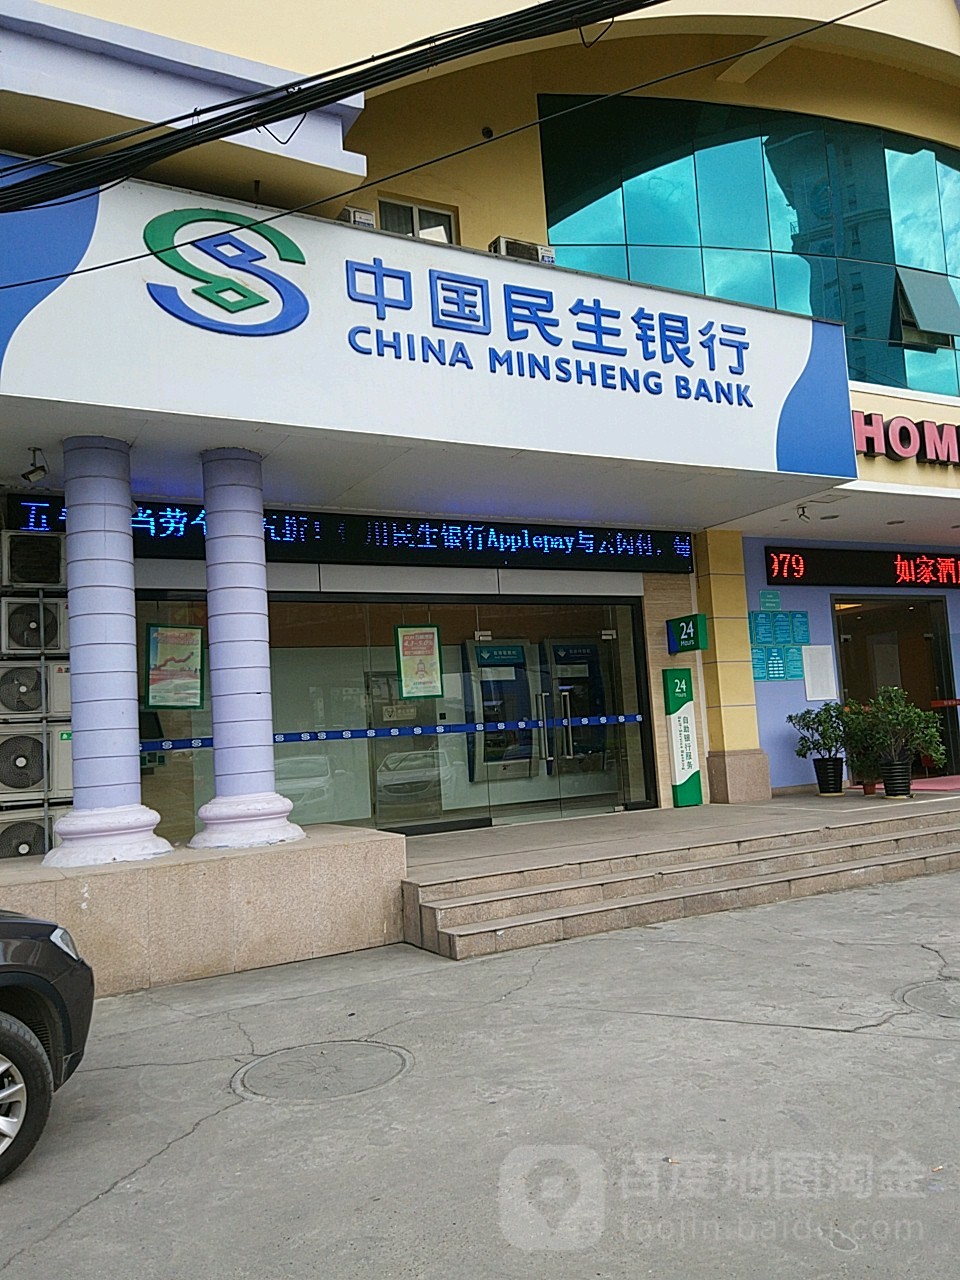 中國民生銀行24小時自助銀行服務(星光大道店)